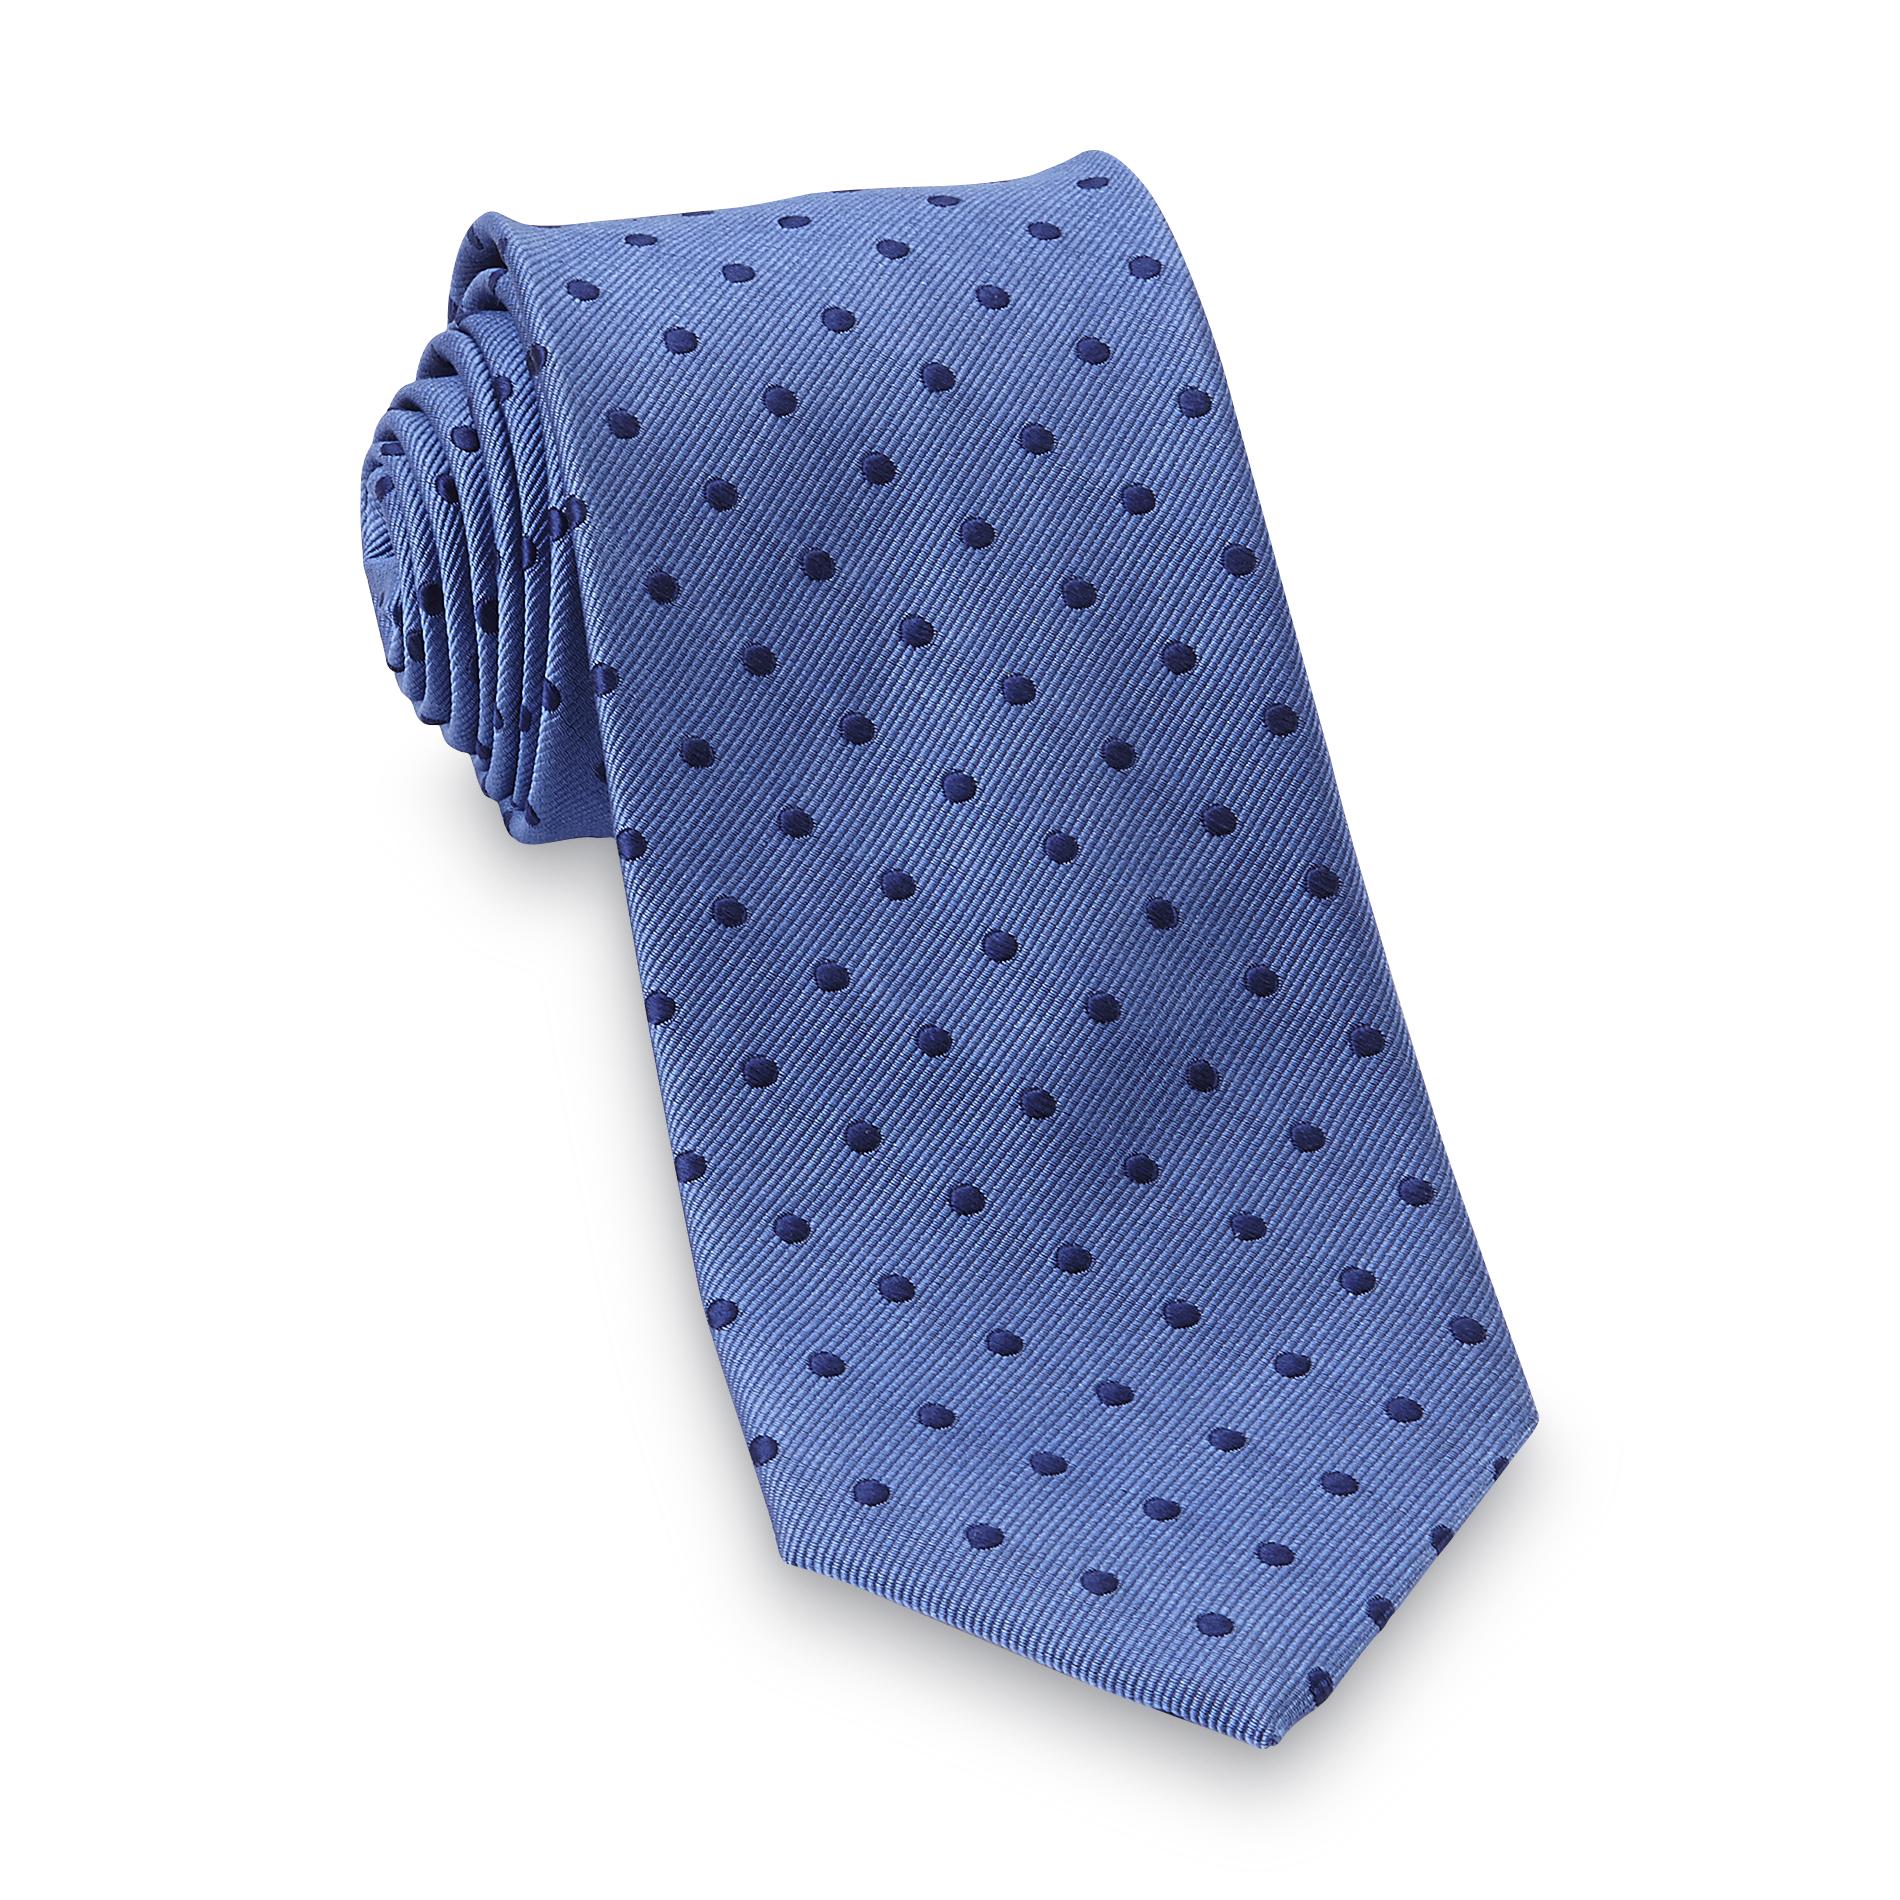 Dockers Men's Necktie - Dots